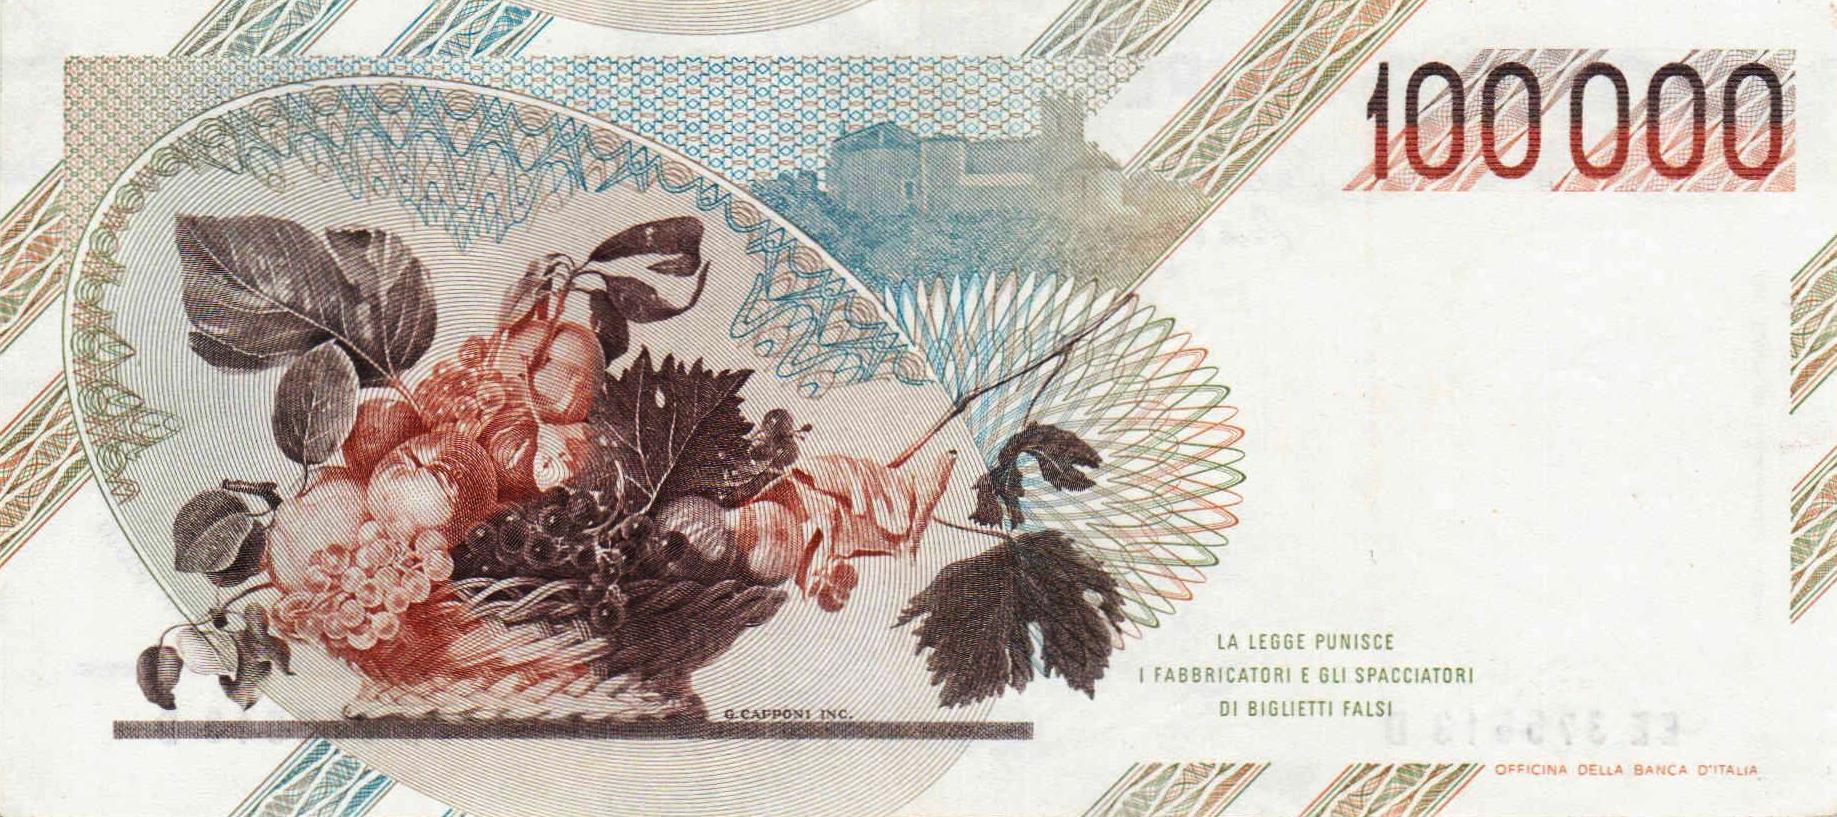 Итальянская банкнота в 100 тысяч лир с портретом Караваджо.